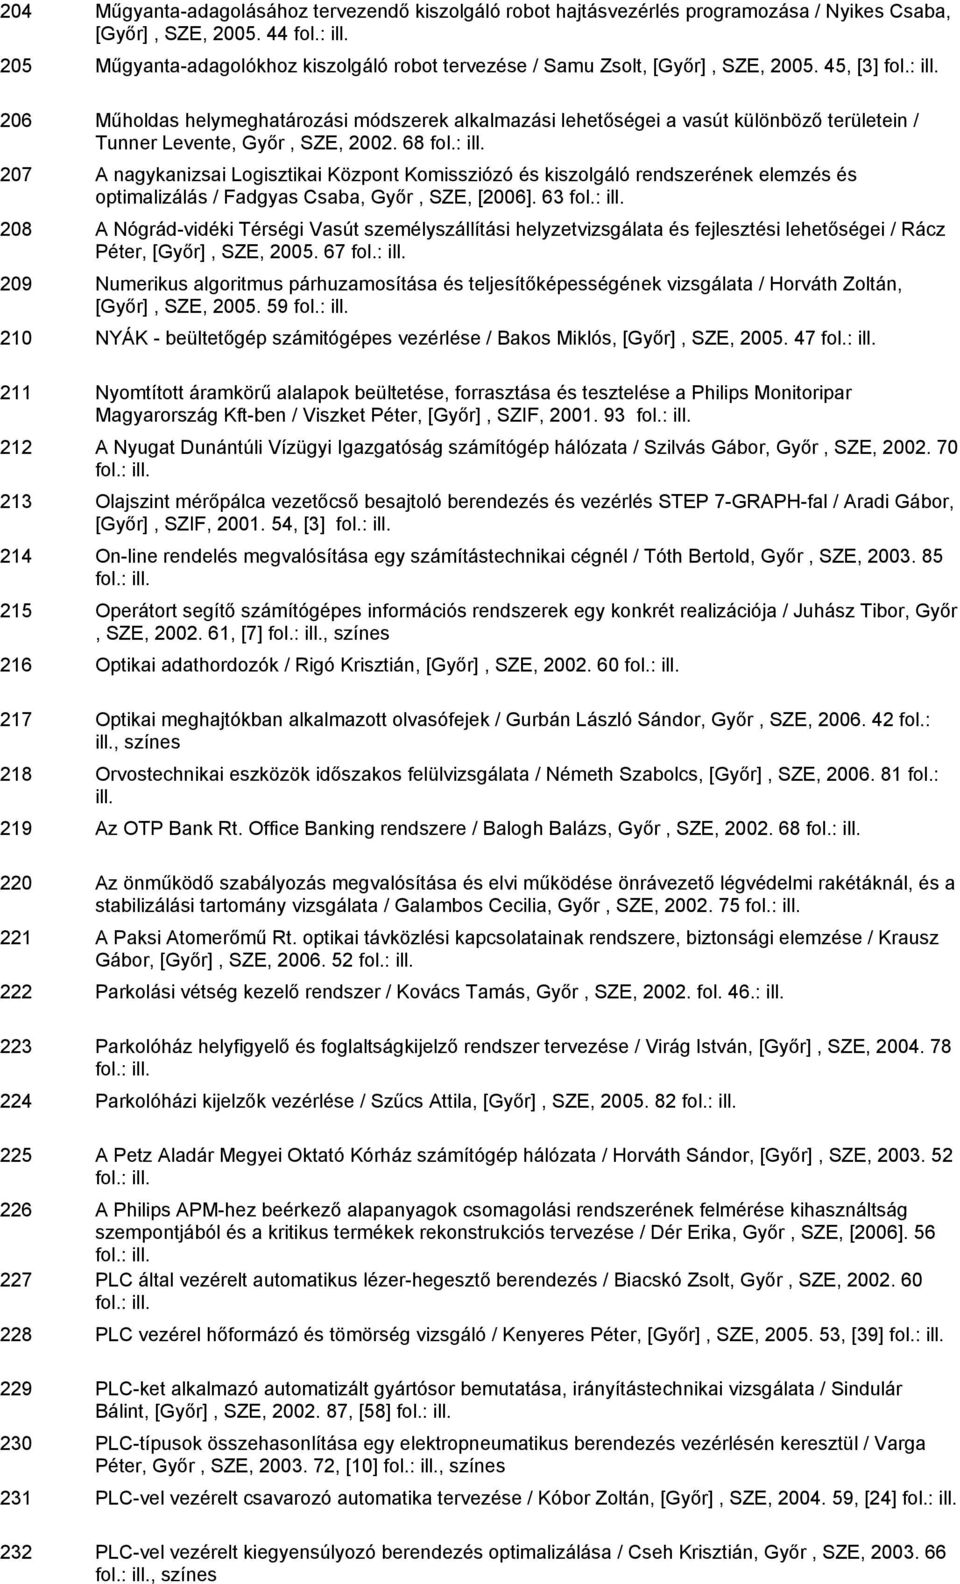 45, [3] 206 Műholdas helymeghatározási módszerek alkalmazási lehetőségei a vasút különböző területein / Tunner Levente, Győr, SZE, 2002.